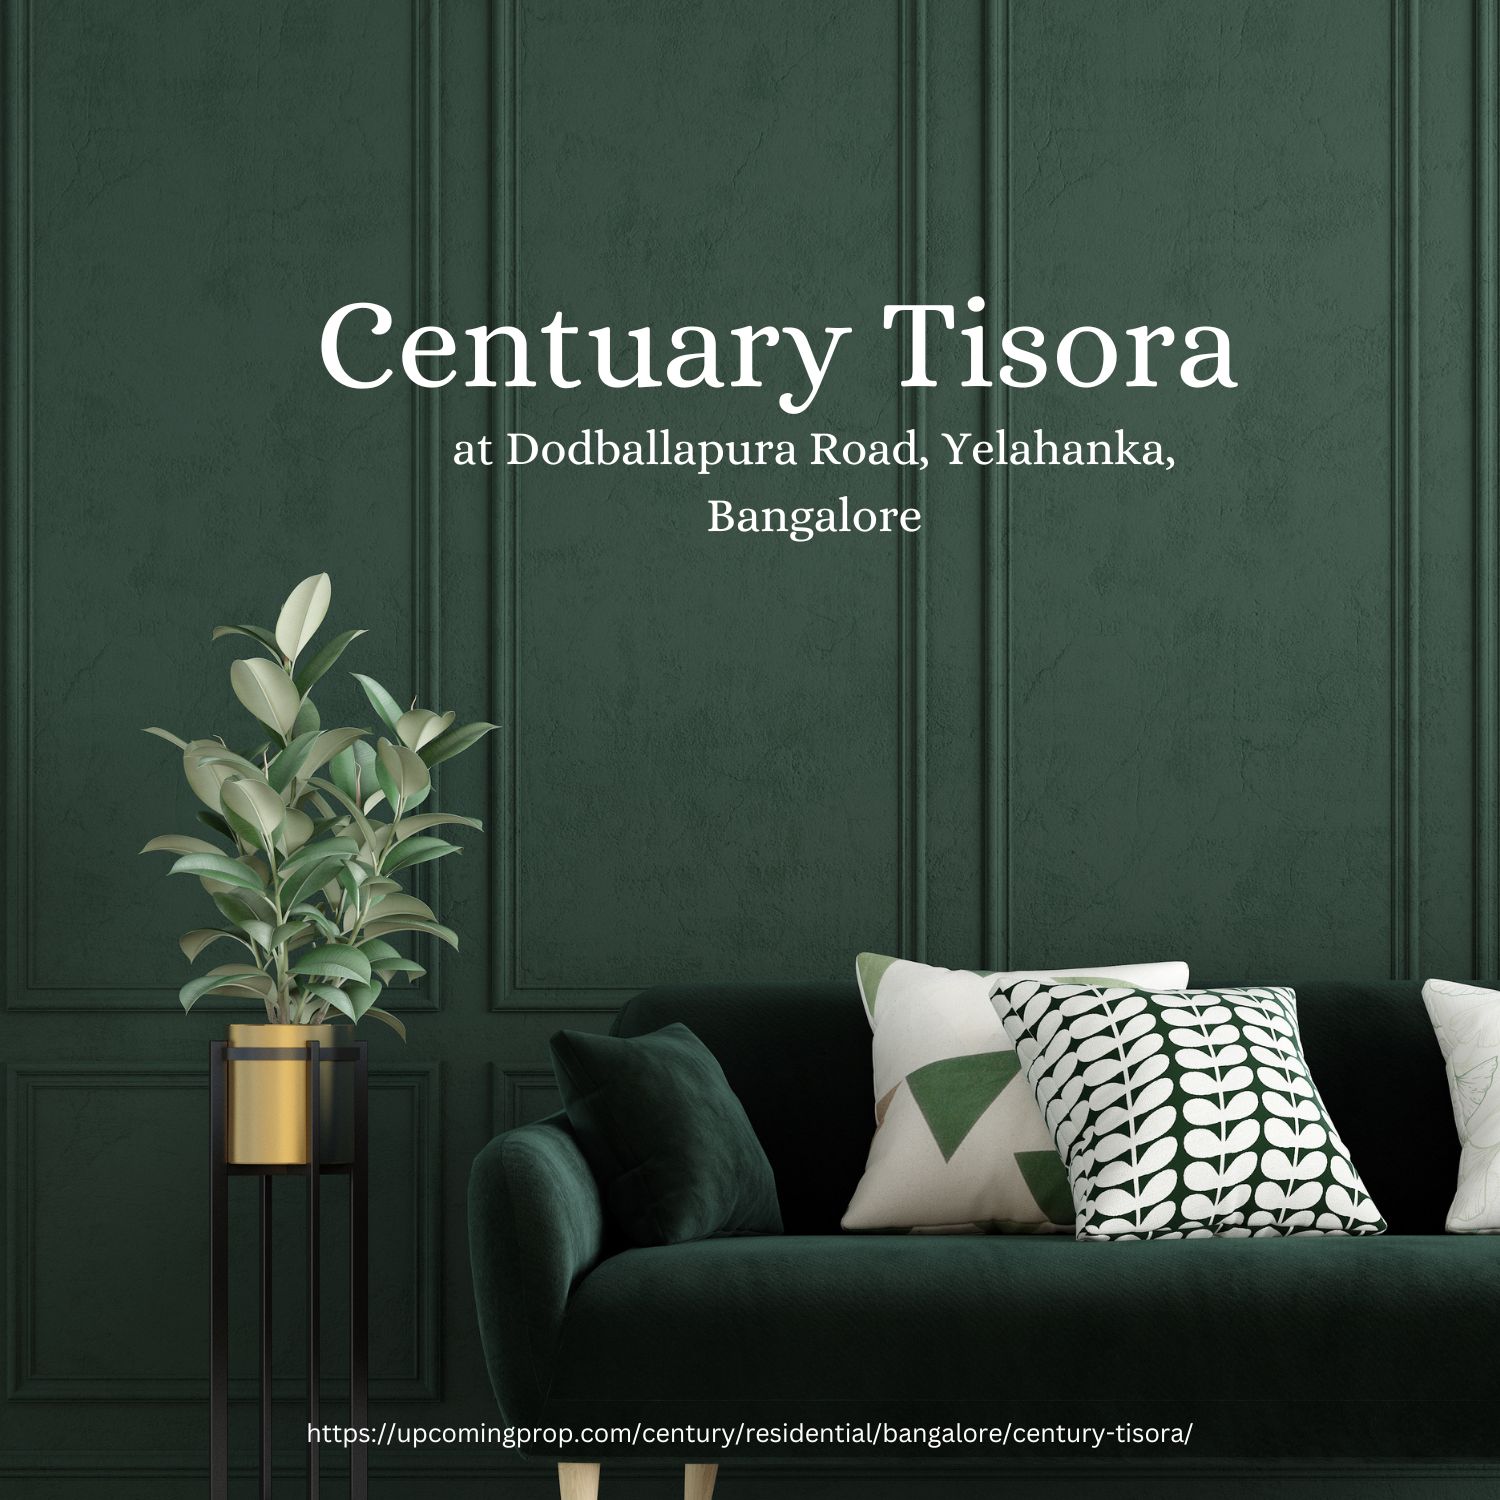 Century Tisora